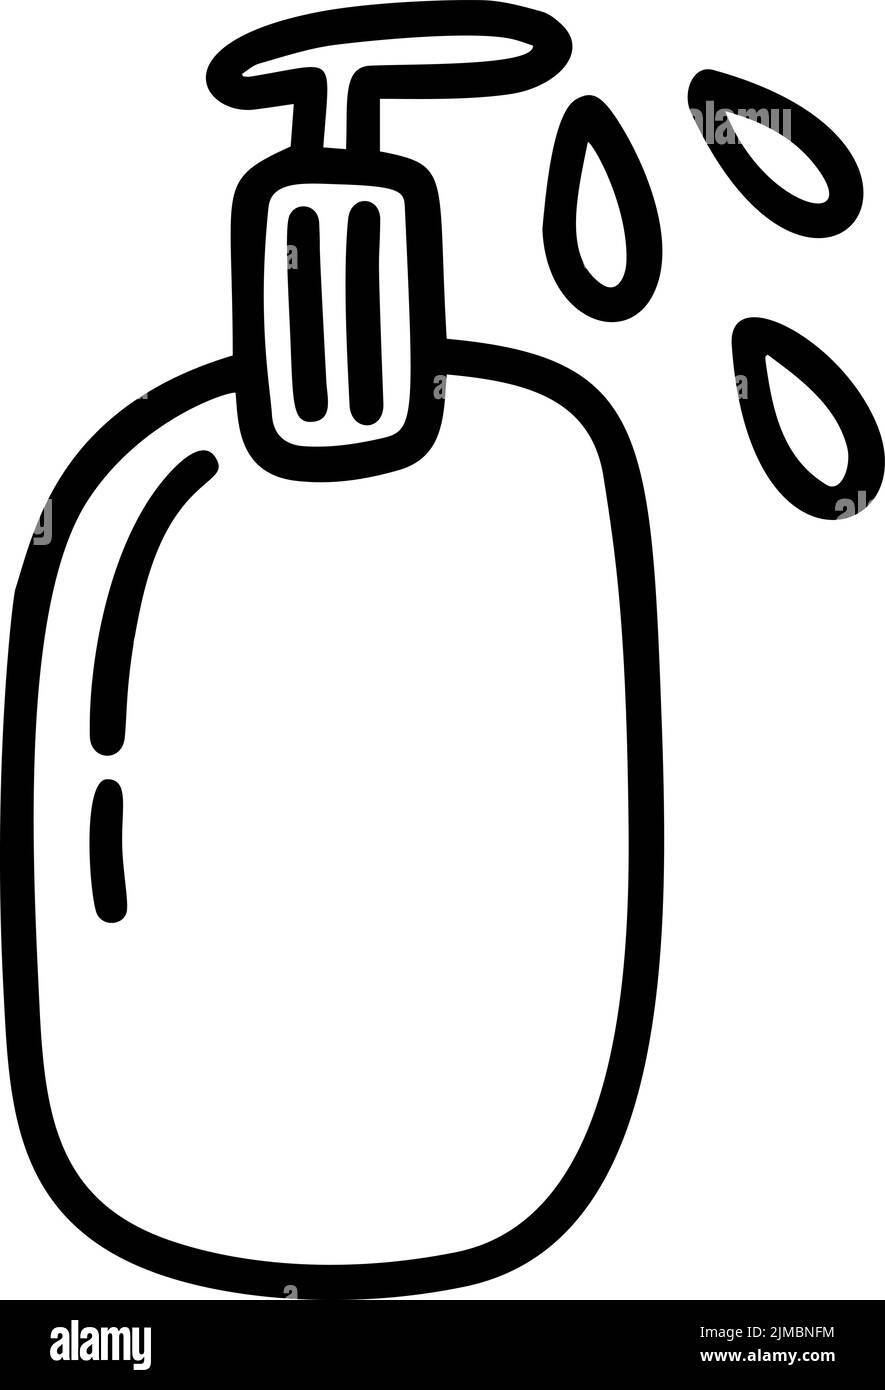 Icono con el logotipo de la botella de gel de jabón Vector monoline. Ilustración sencilla de elementos para el covid-19 de coronavirus. Aviso de higiene personal y desinfección Ilustración del Vector